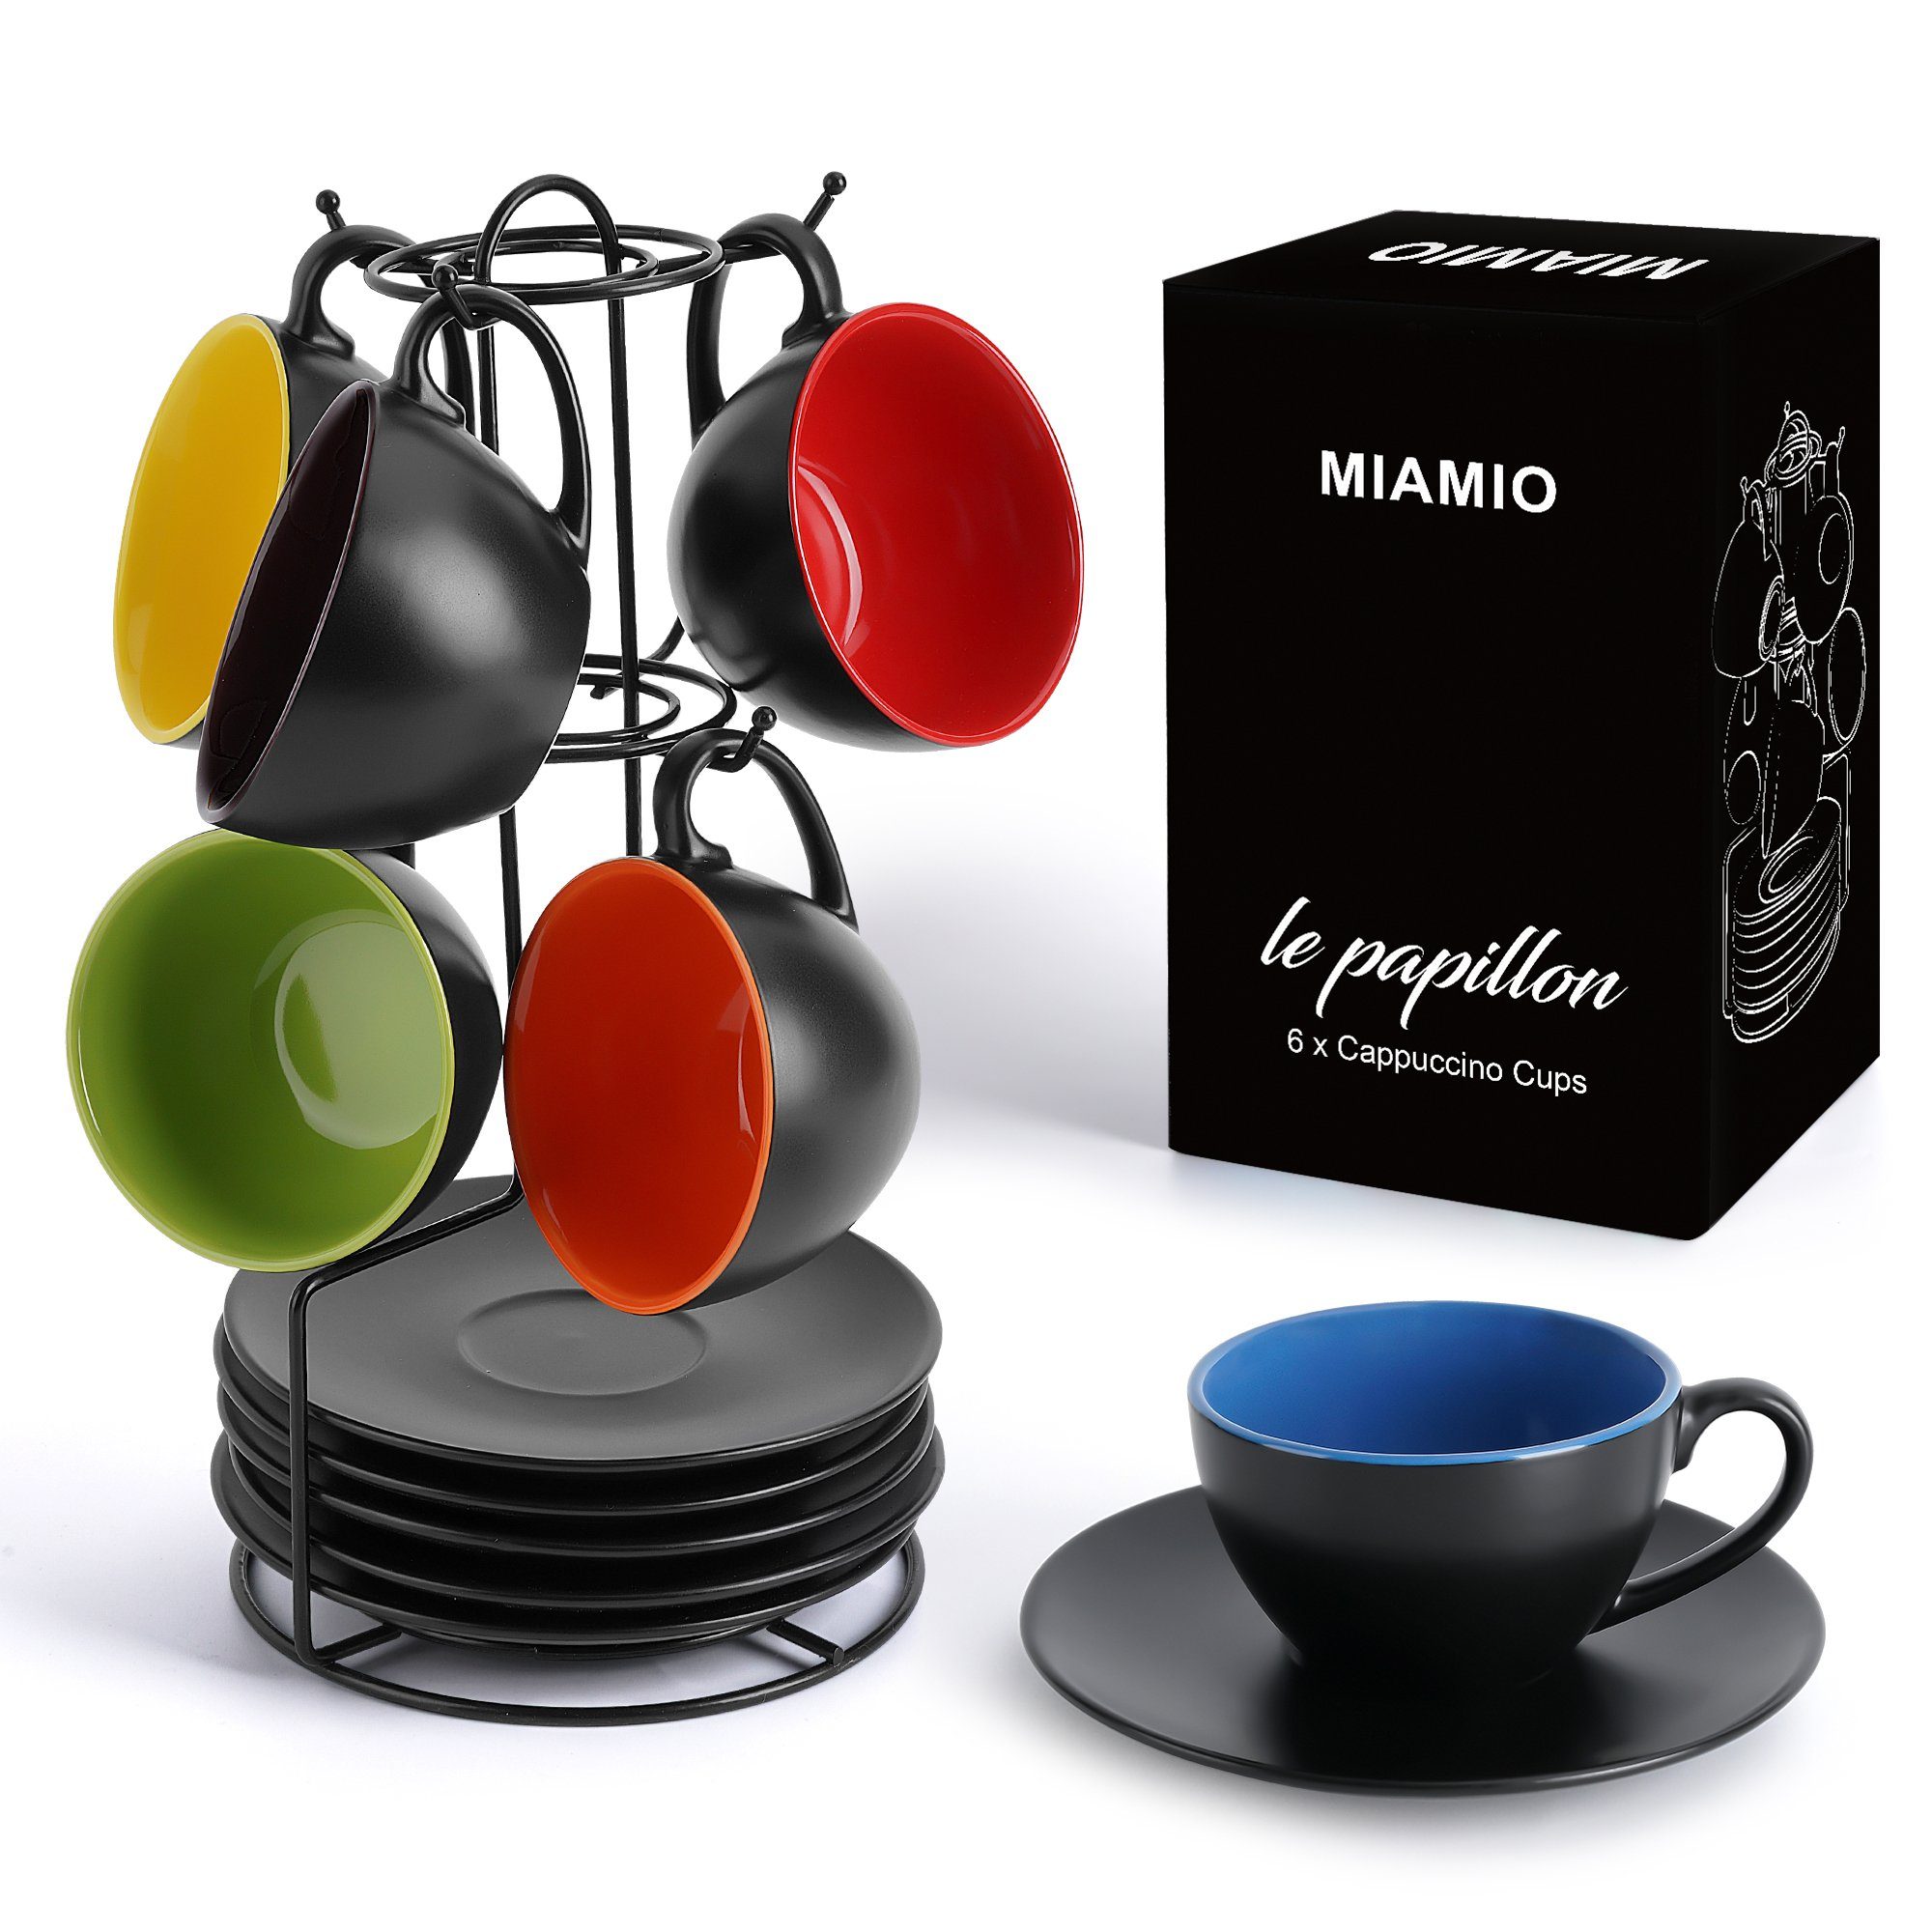 MiaMio Cappuccinotasse Чашки для капучино Set, Cappuccino Чашки (Innen Bunt)